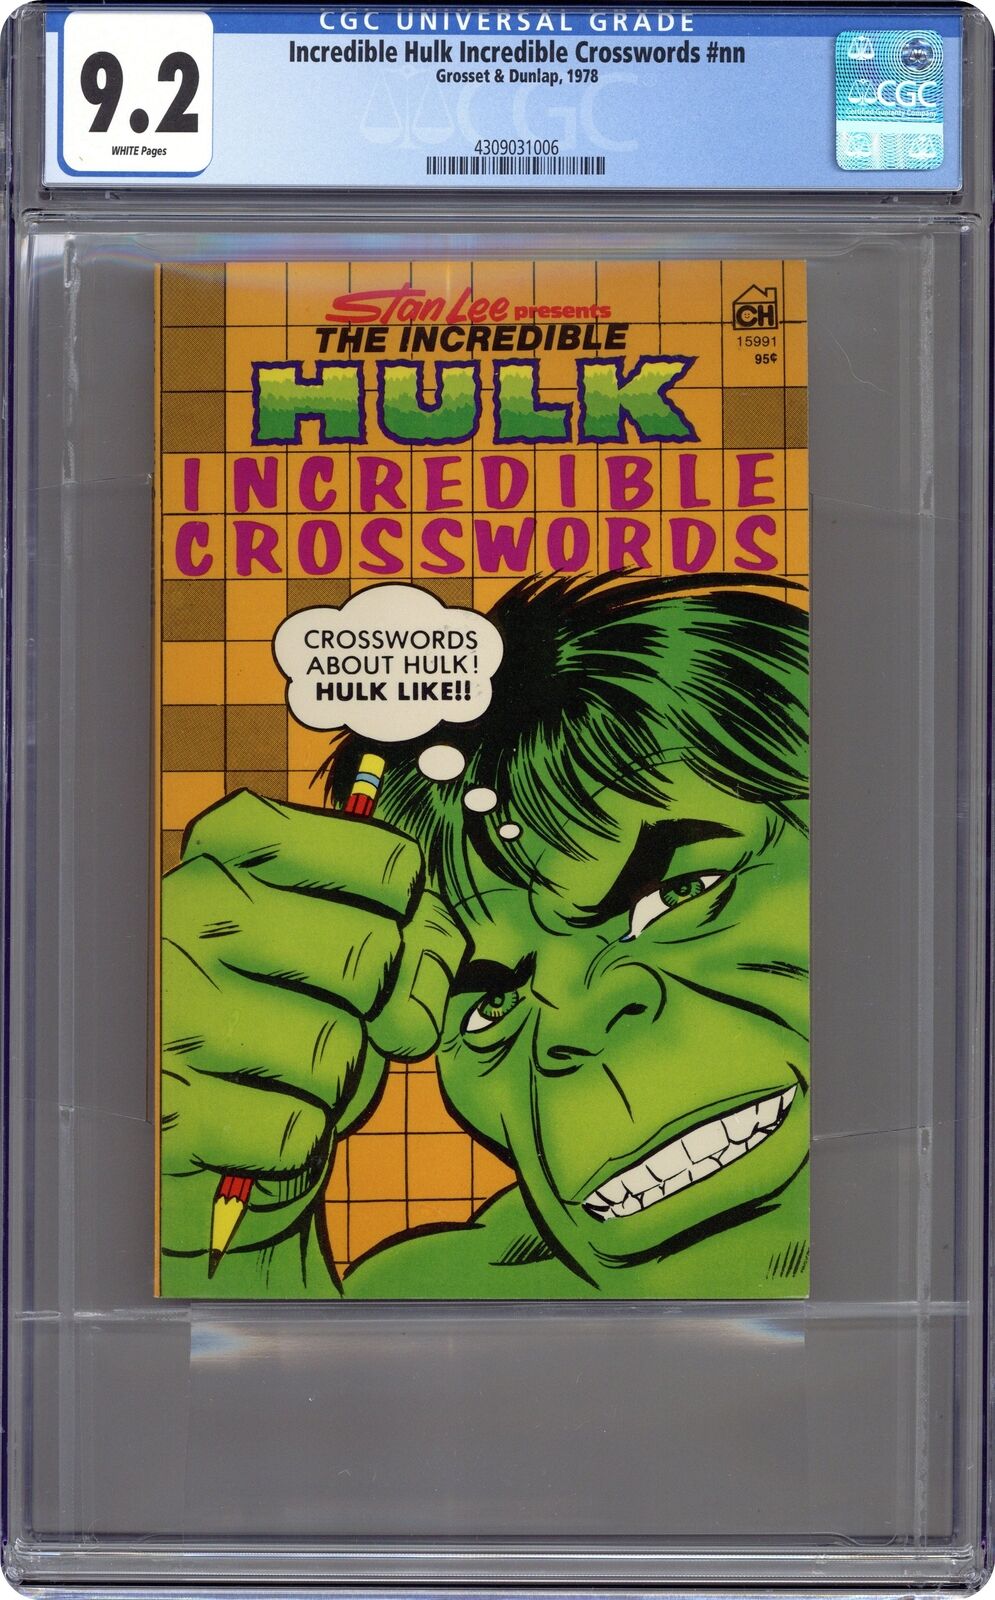 Incredible Hulk Incredible Crosswords #1 CGC 9.2 1978 4309031006